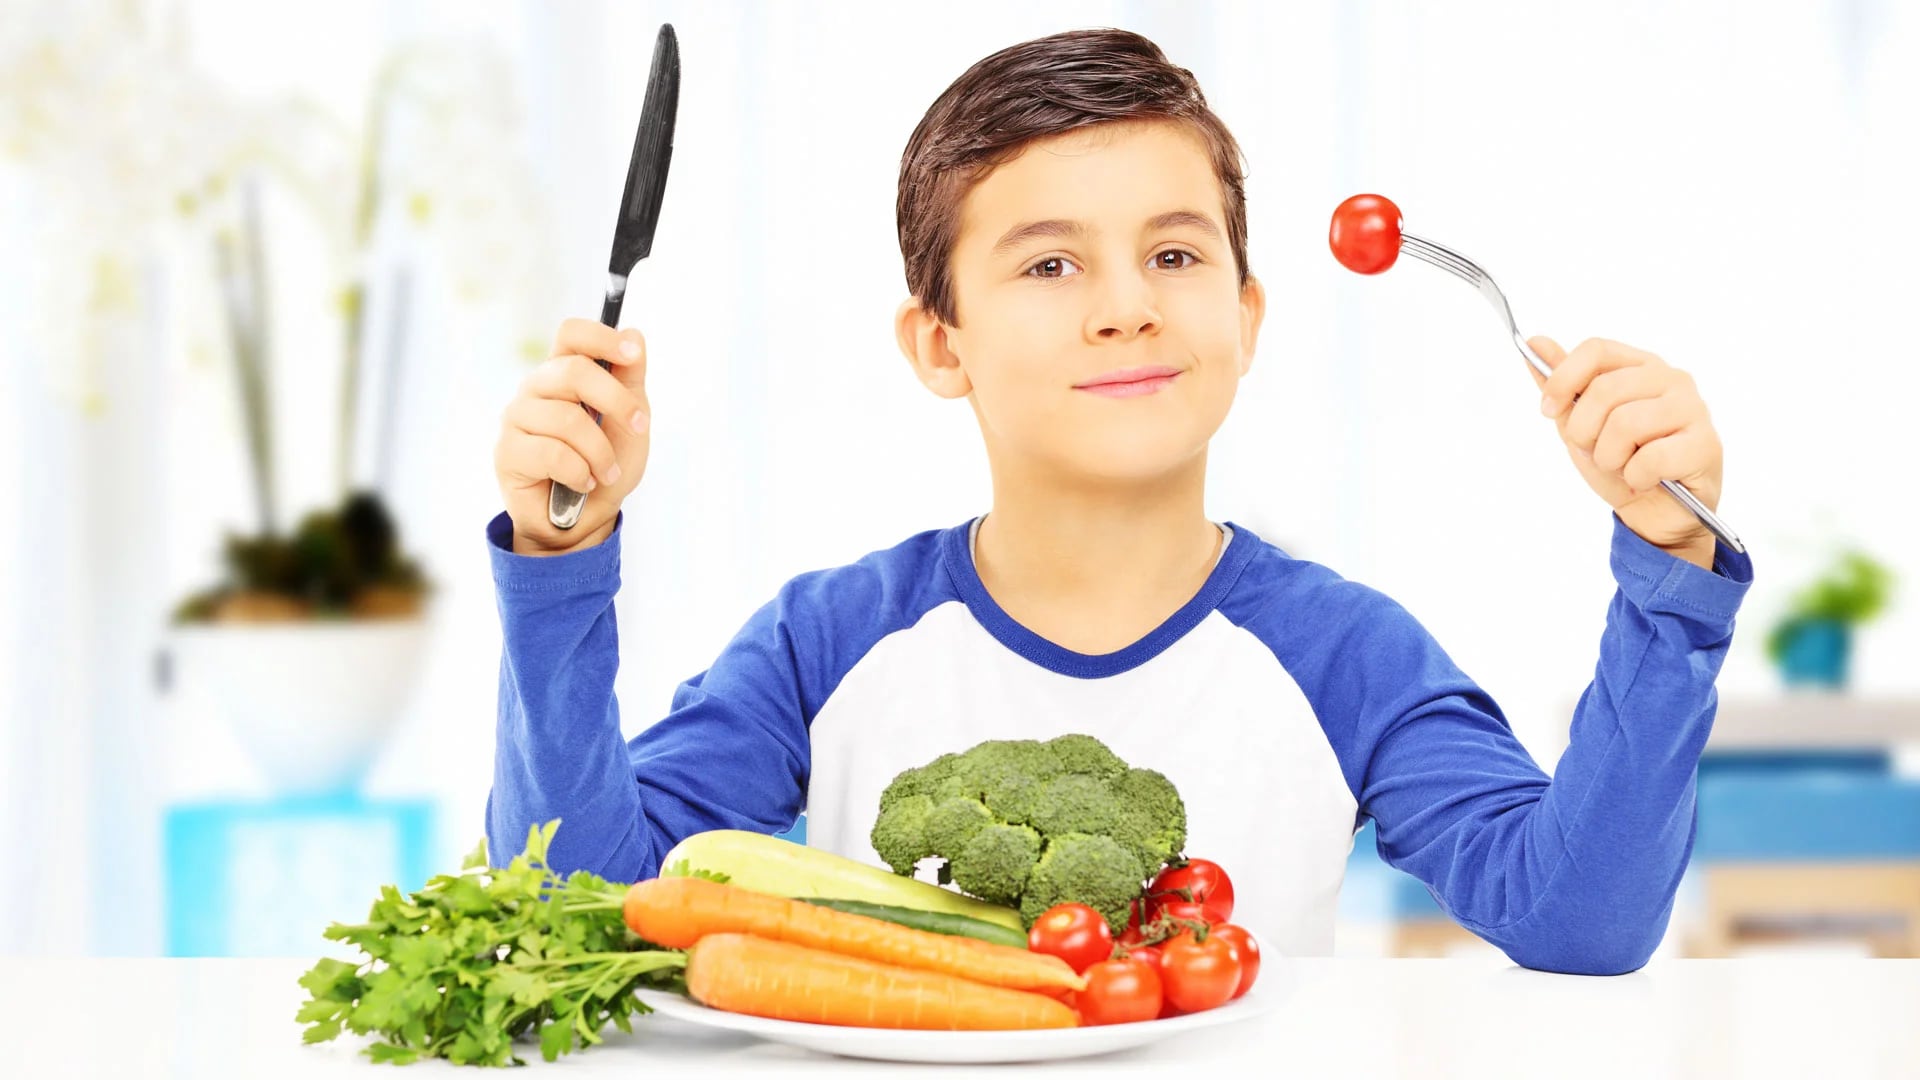 Una dieta variada en nutrientes tiene un gran efecto en el desarrollo inmune de niños (Shutterstock)